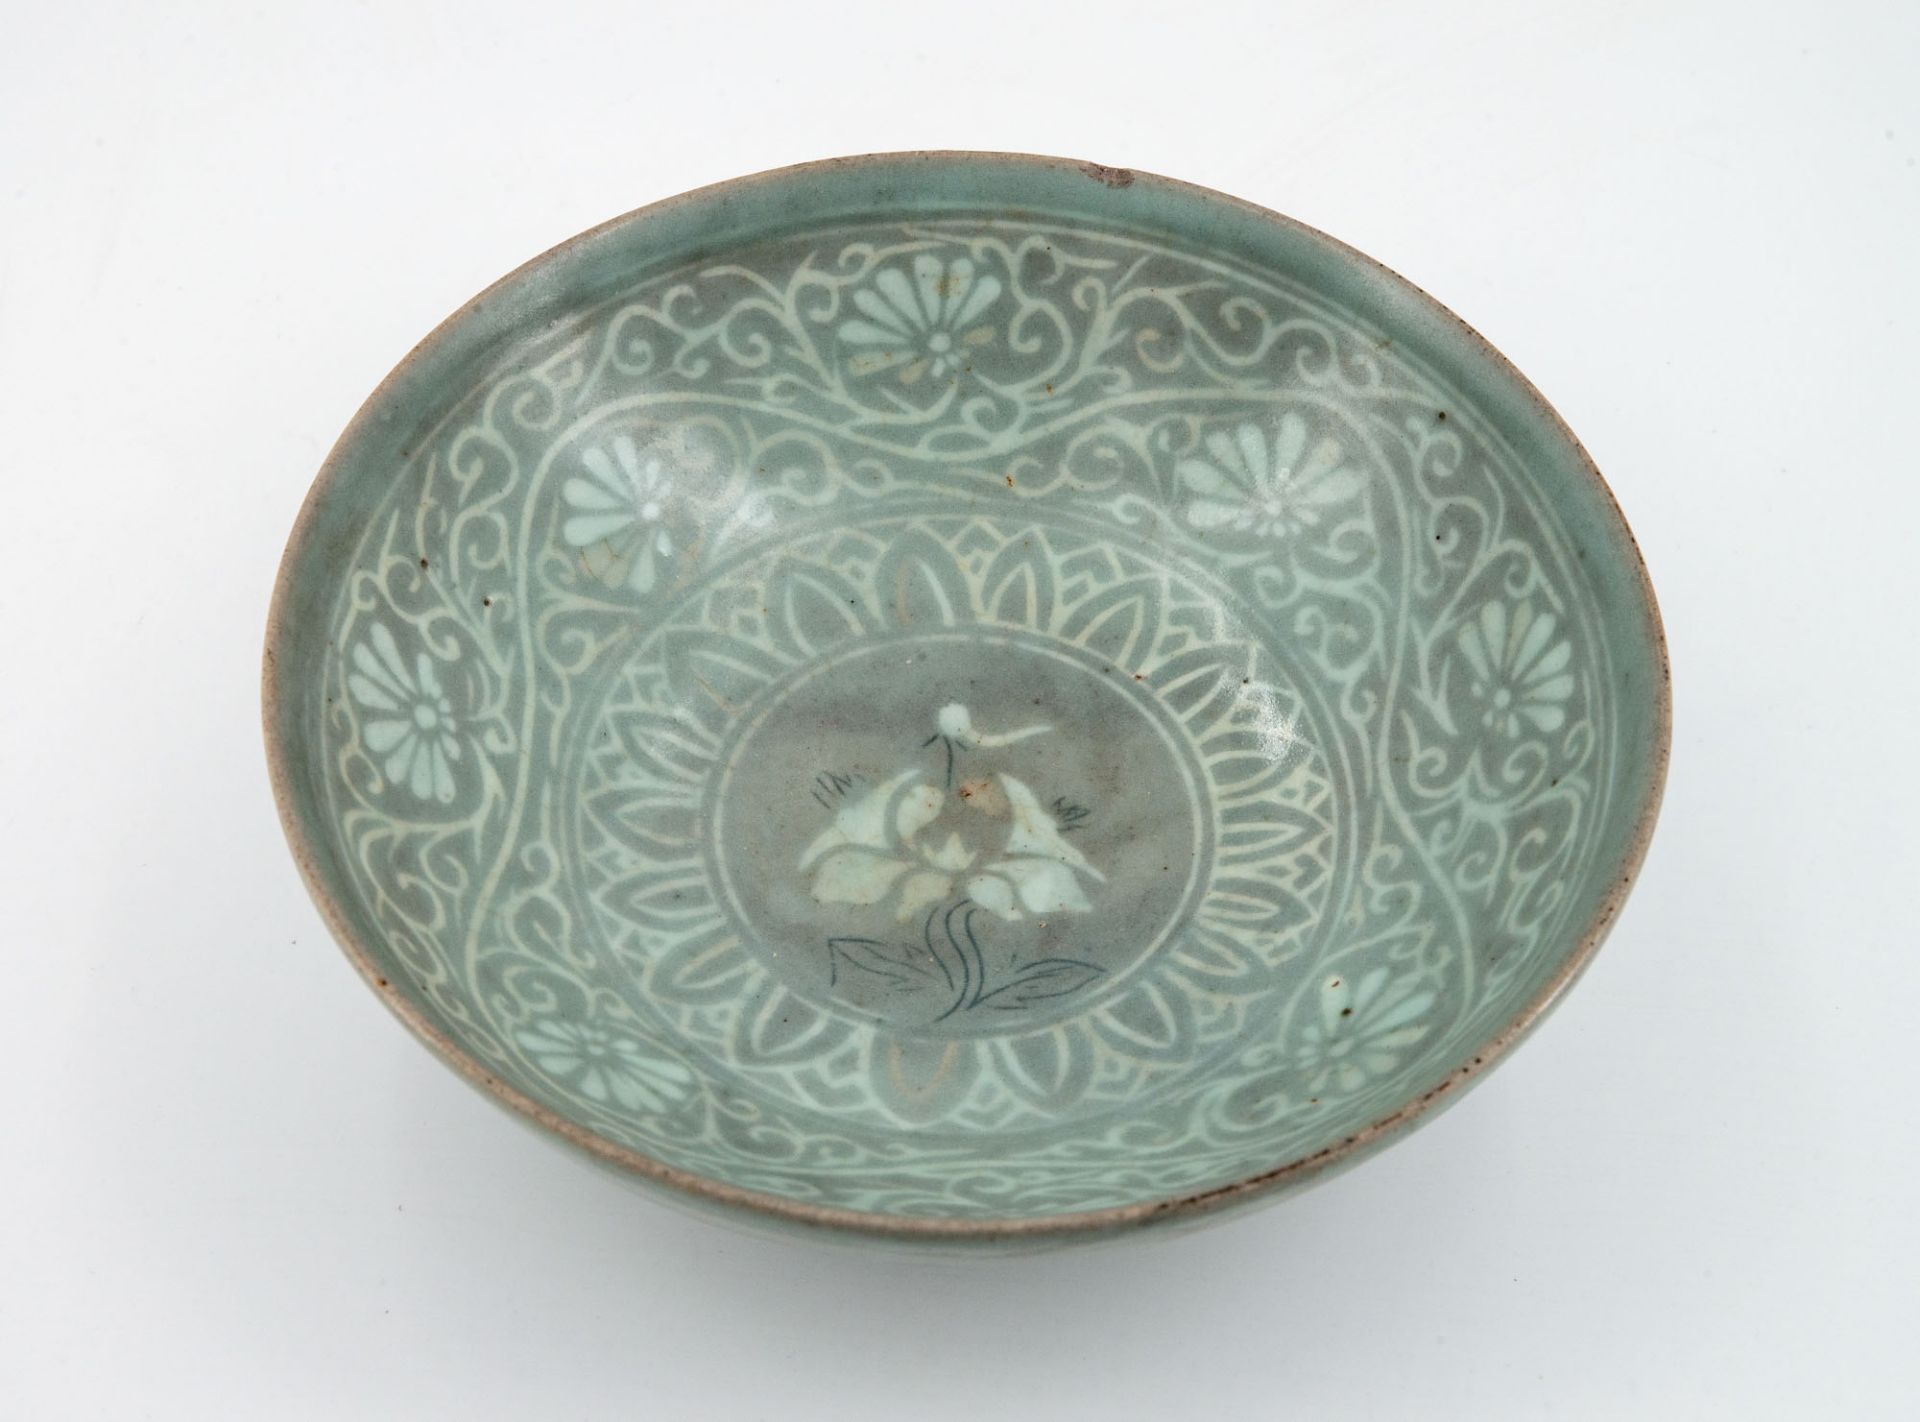 A Rare Celadon Stoneware Bowl, Korea, Goryeo Dynasty, 13/14th Century - Image 2 of 3